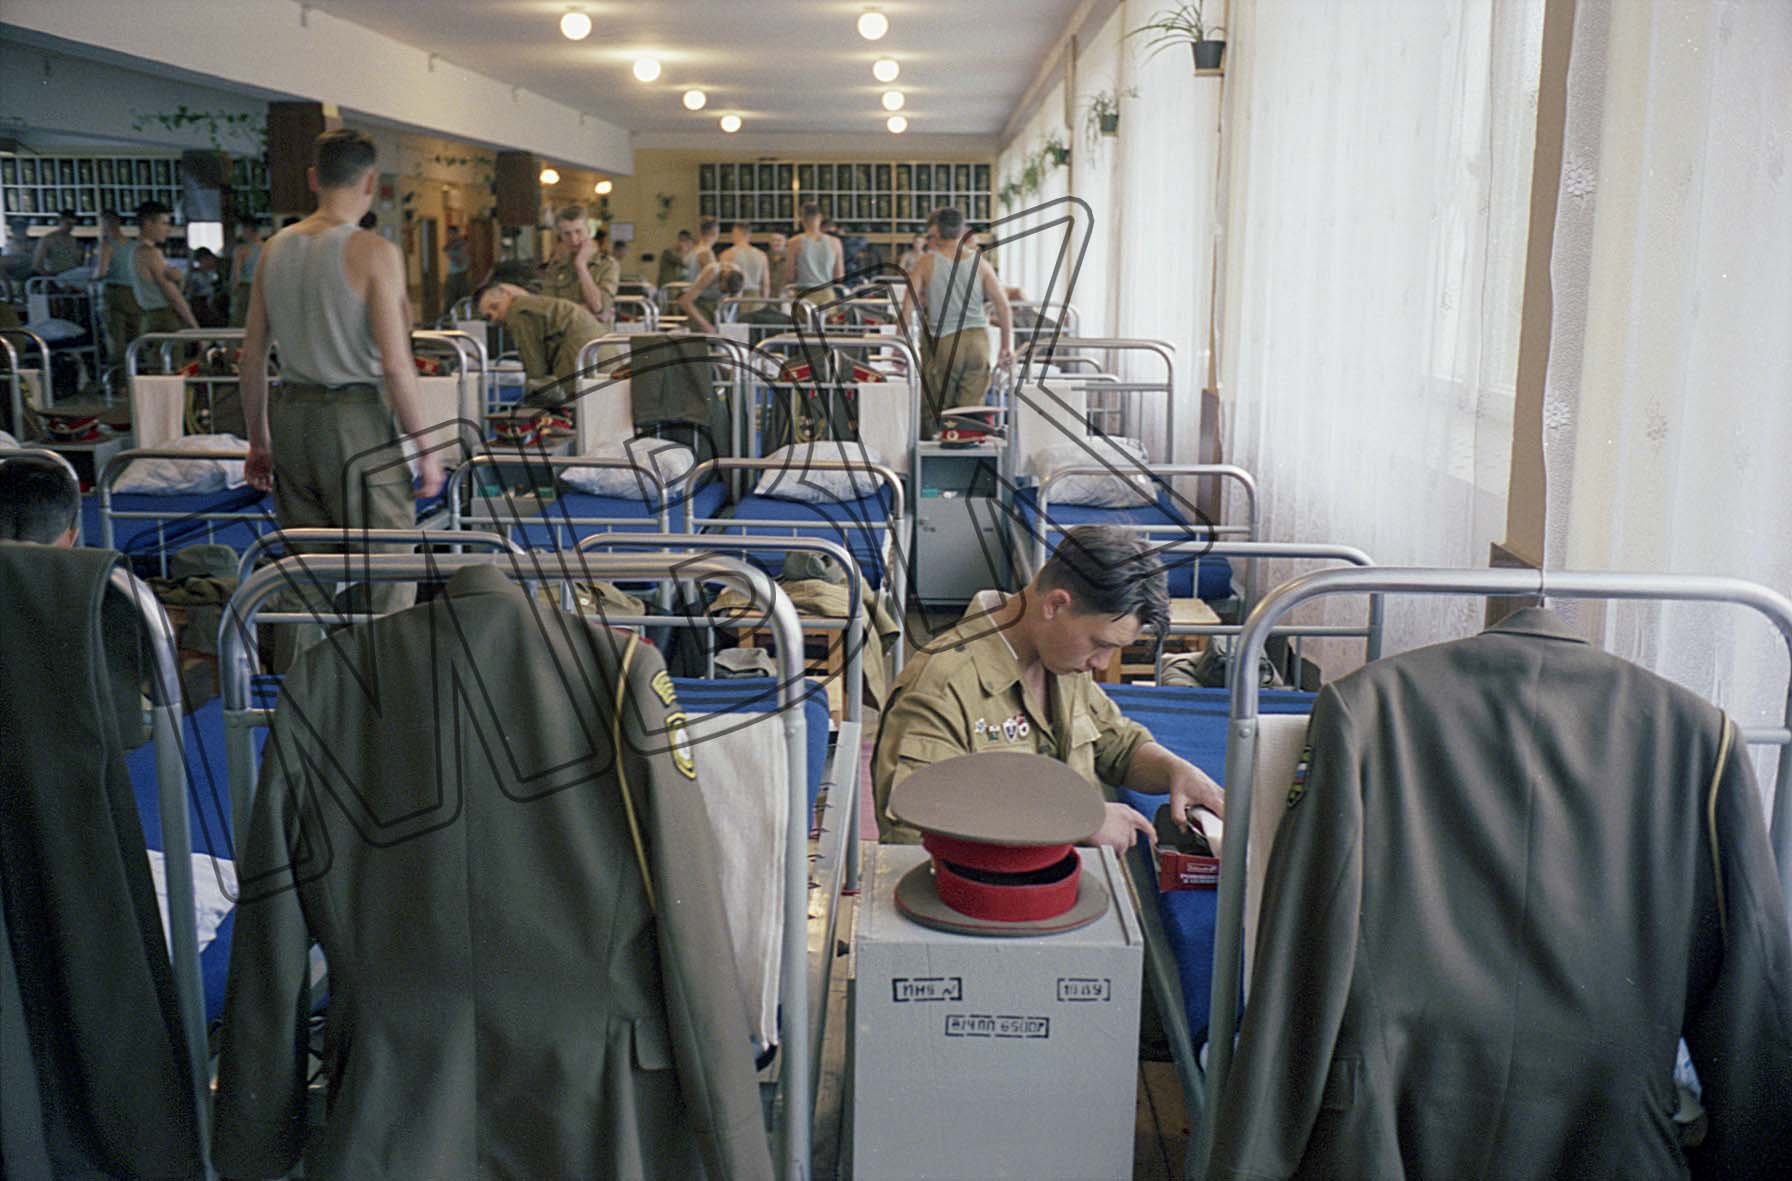 Fotografie: Morgendliches Ankleiden im Schlafsaal der Berlin-Brigade, Berlin-Karlshorst, 1994 (Museum Berlin-Karlshorst RR-P)